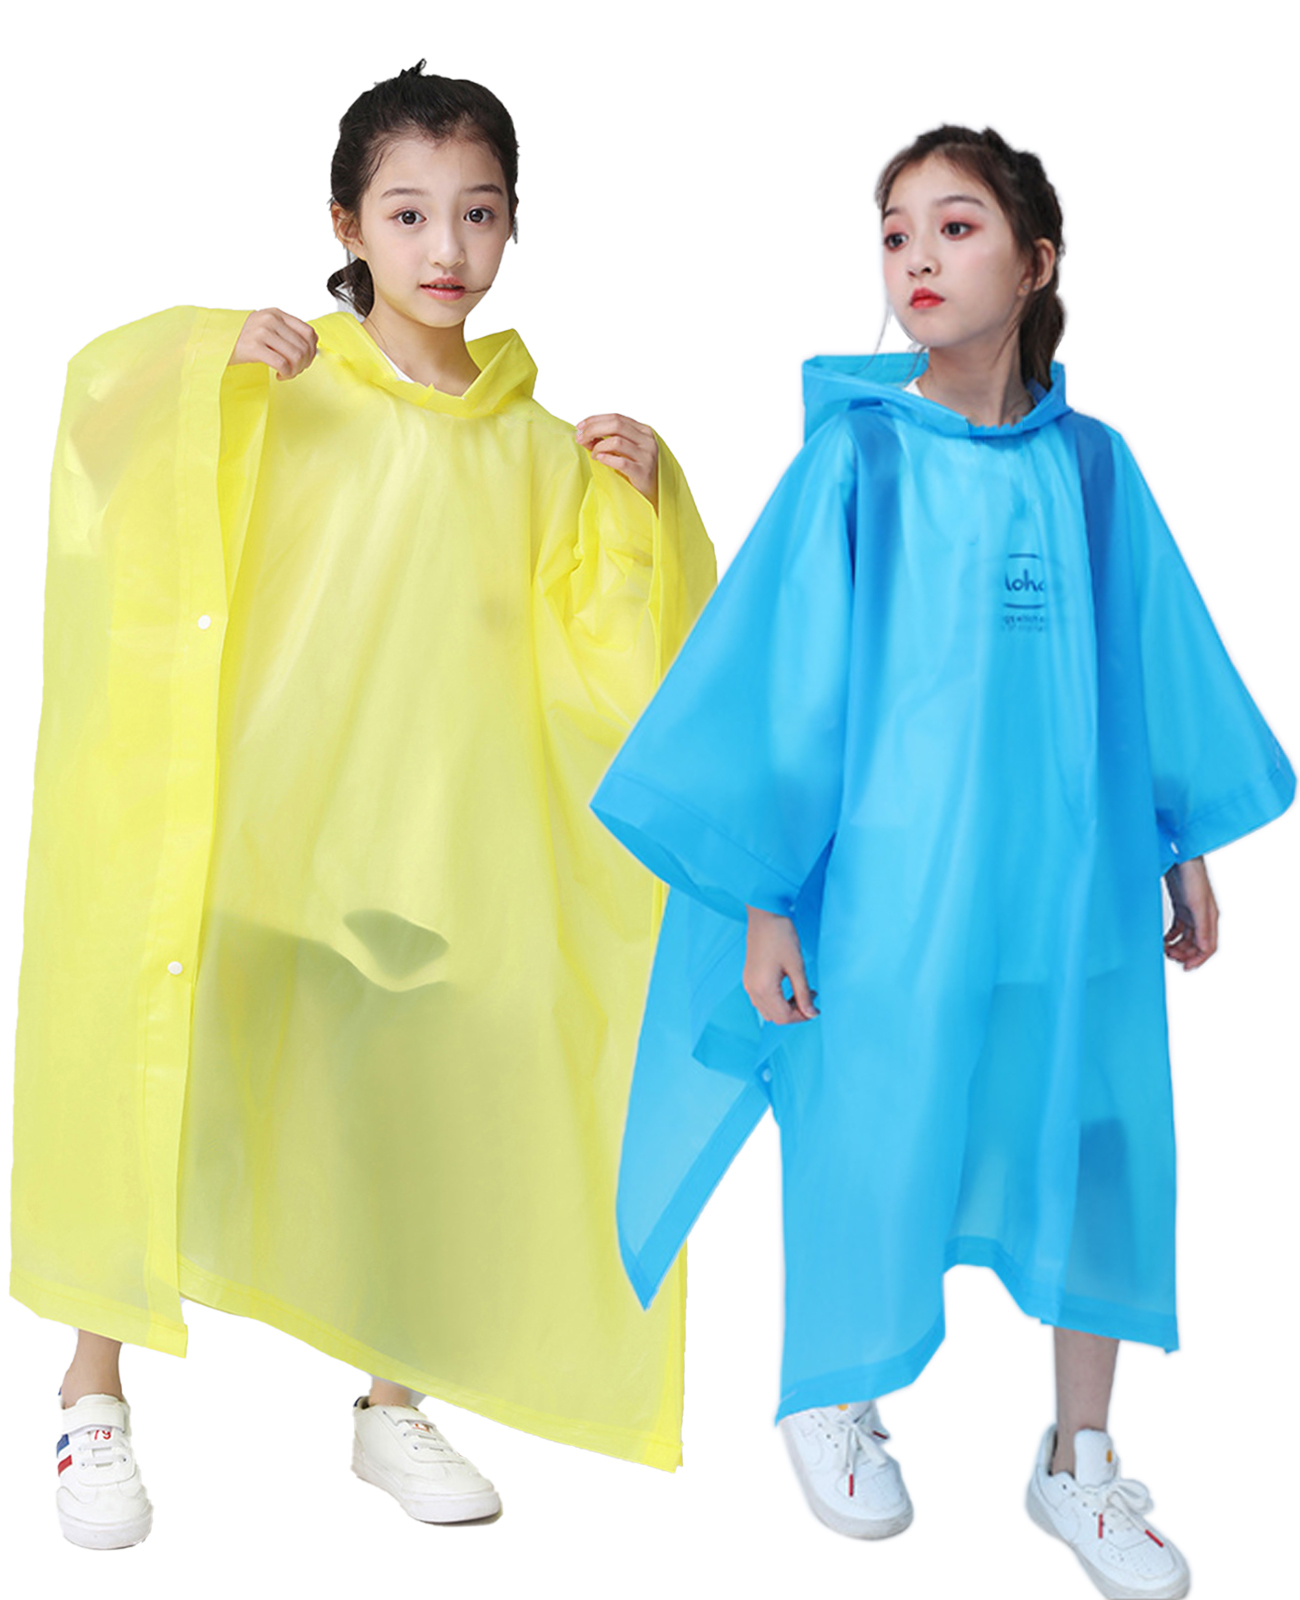 Makonus Rain Ponchos for Kids, [2 Pack] EVA Reusable Raincoat for Boys & Girls, Blue & Yellow